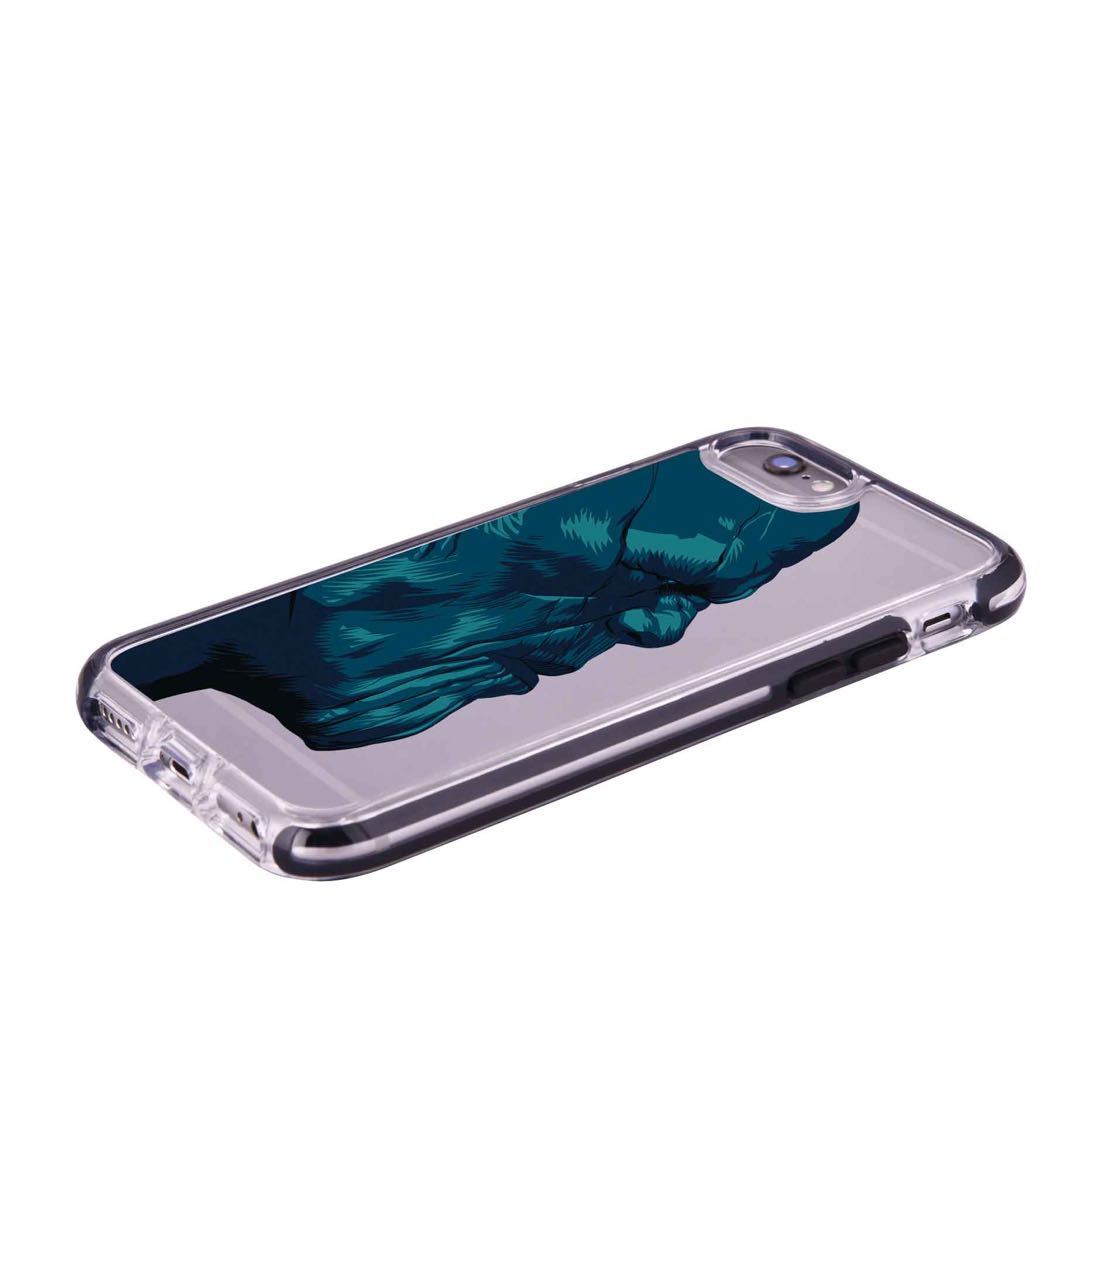 Illuminated Thanos - Extreme Phone Case for iPhone 6S